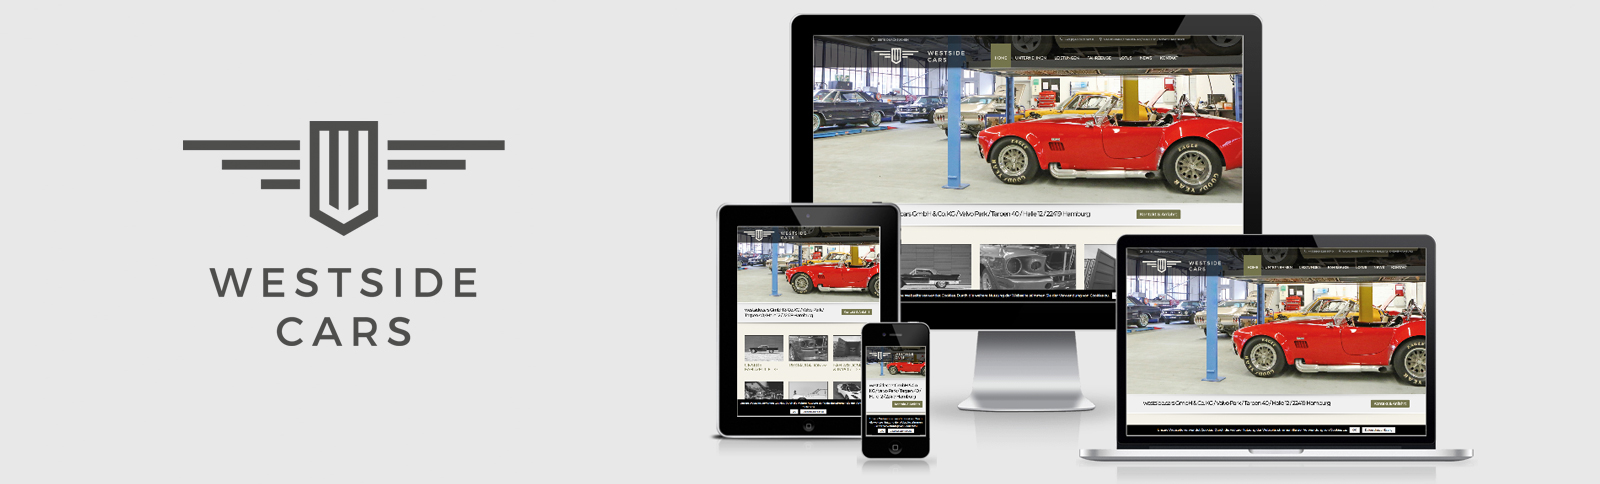 Fotoshooting und Relaunch der Homepage für westside.cars GmbH & Co. KG